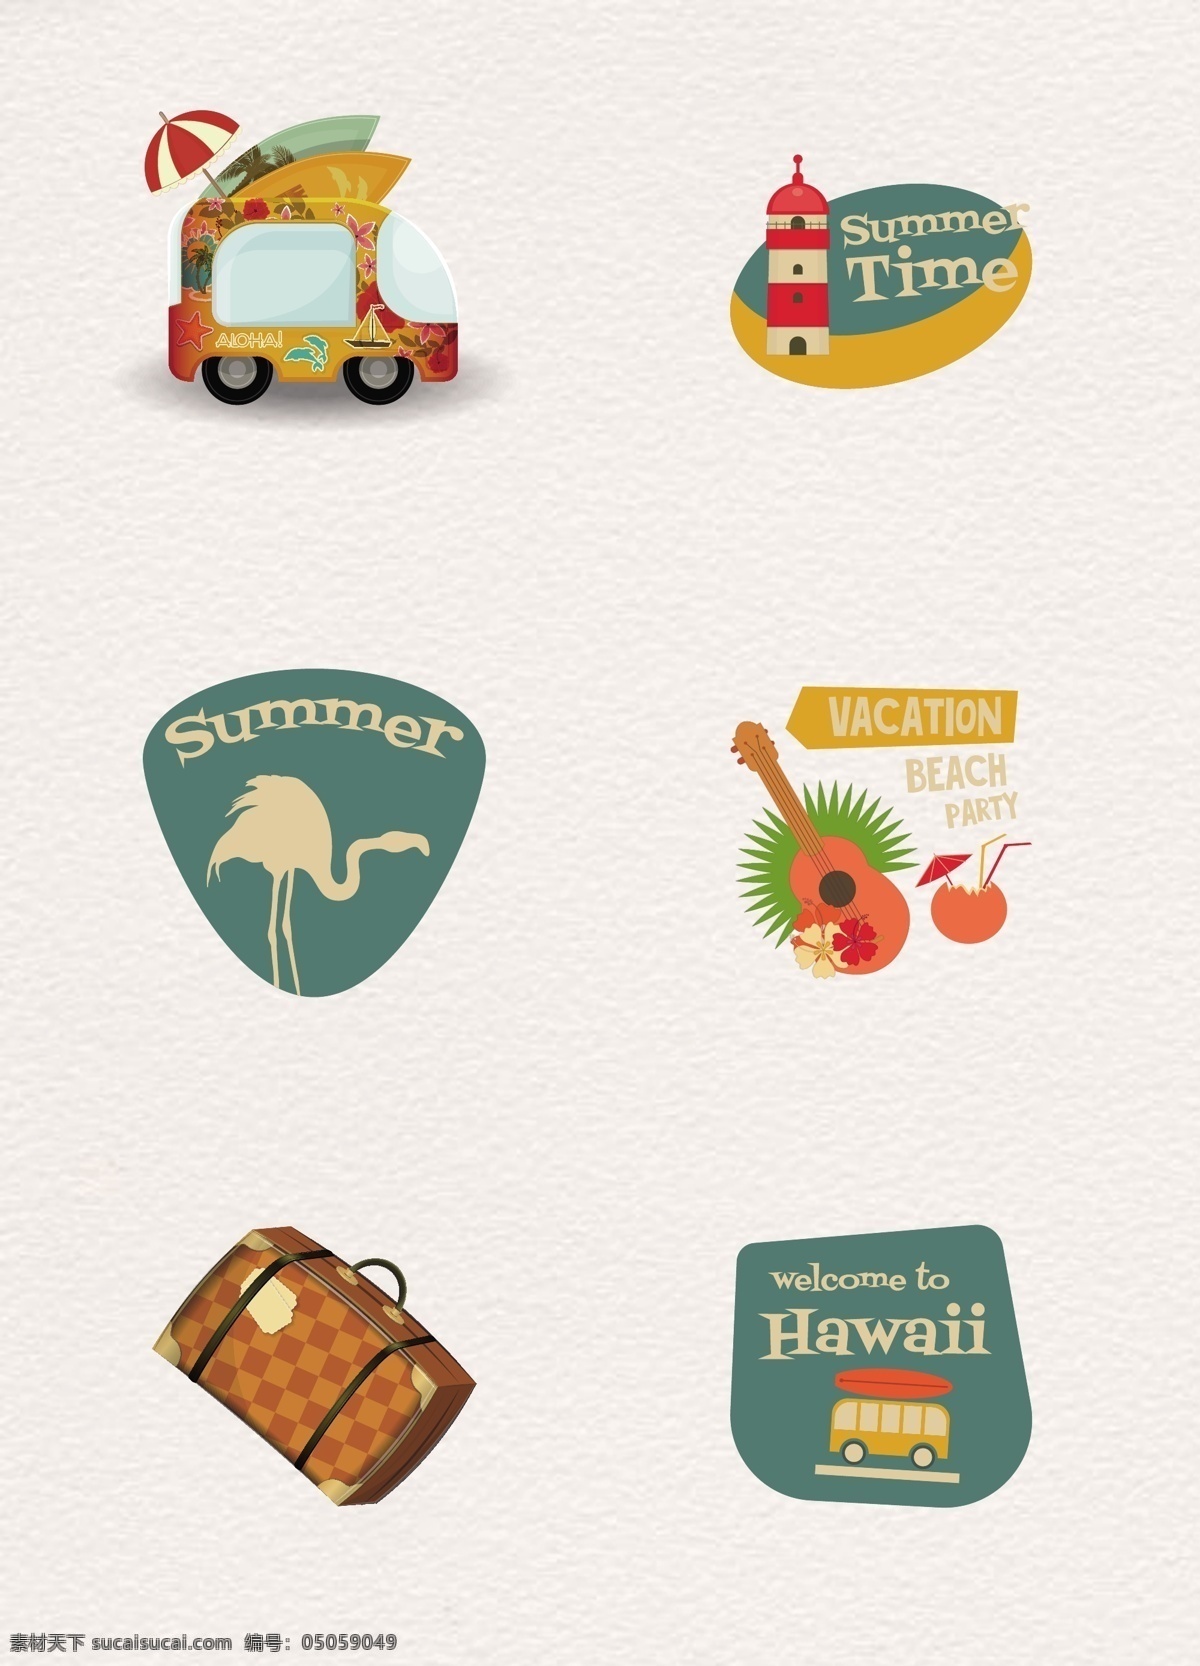 创意 夏日 度假 标签 矢量图 旅行 自驾游 夏威夷 旅行箱 矢量设计 夏天度假 夏日度假标签 夏季标签